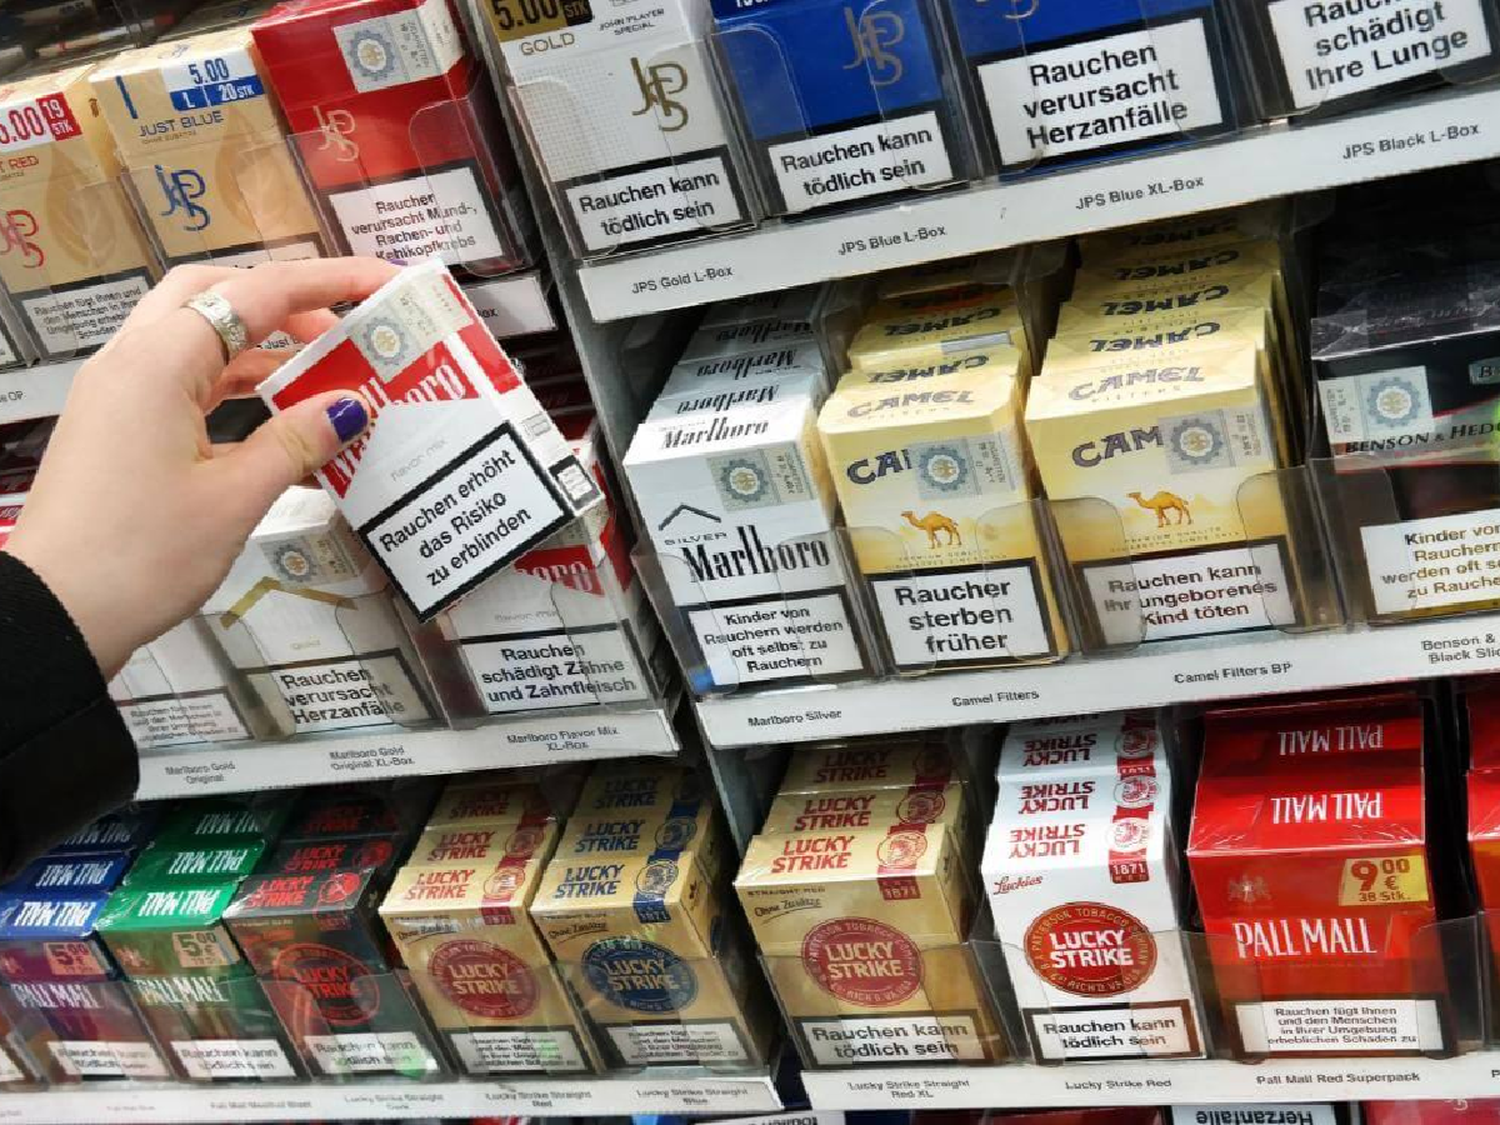 Los kioscos se quedan sin cigarrillos y las tabacaleras dicen que no tiene más stock